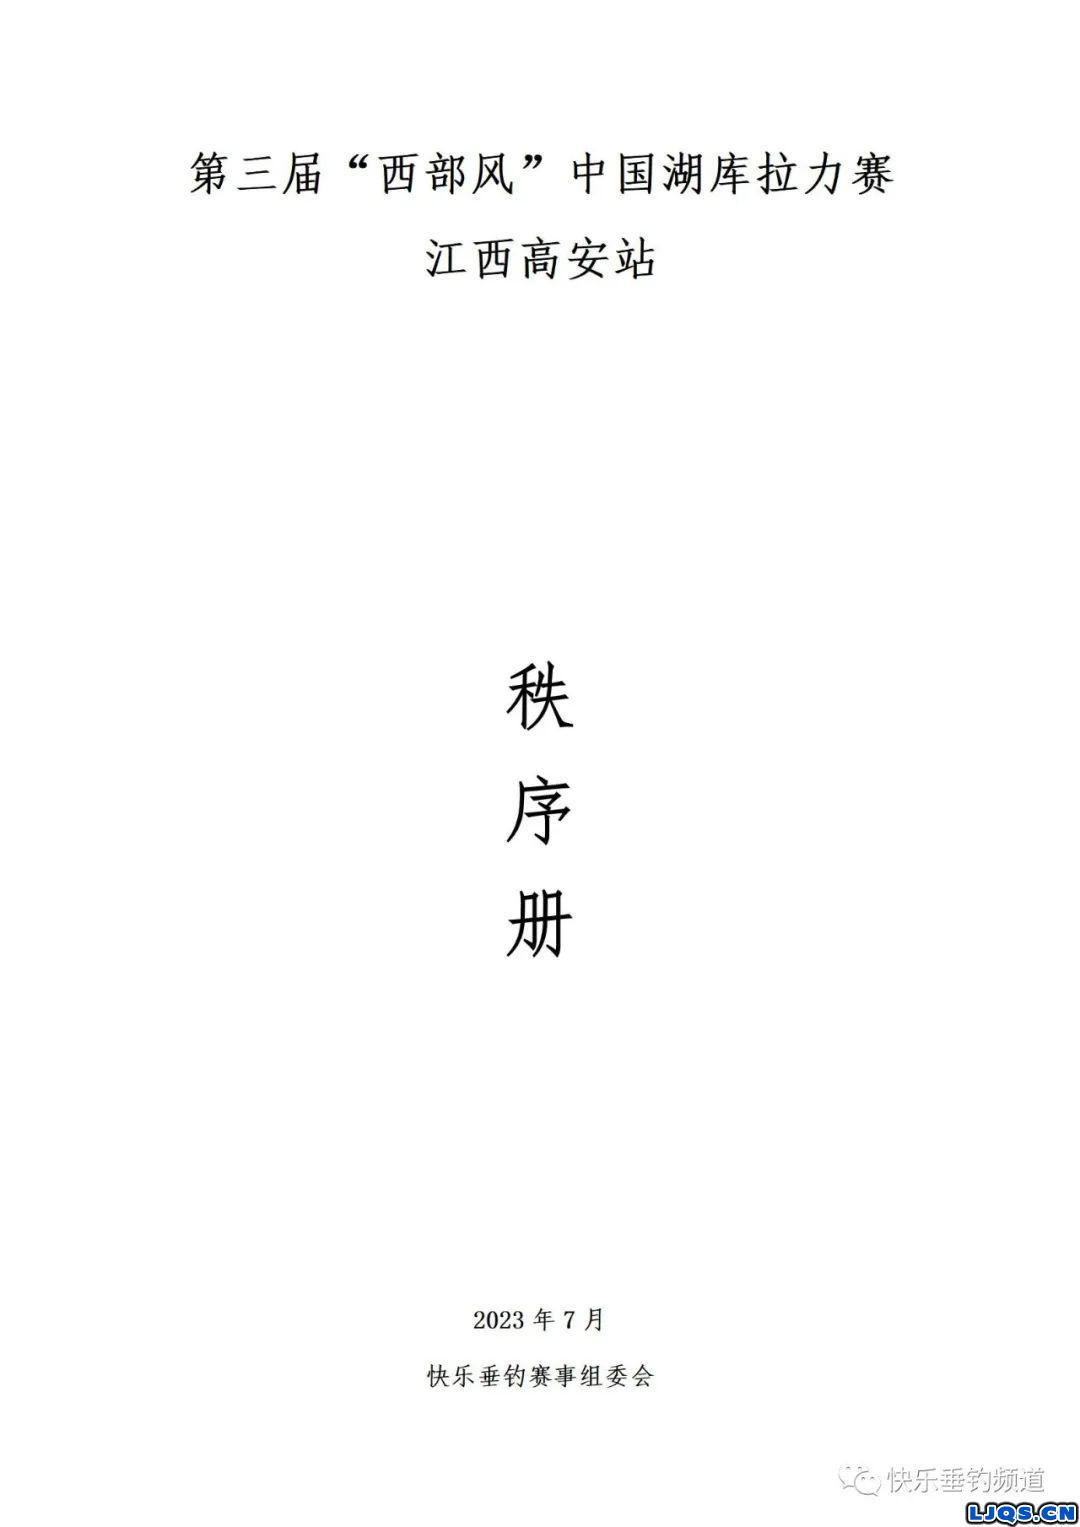 第三届“西部风”中国湖库拉力赛江西高安站秩序册公示！